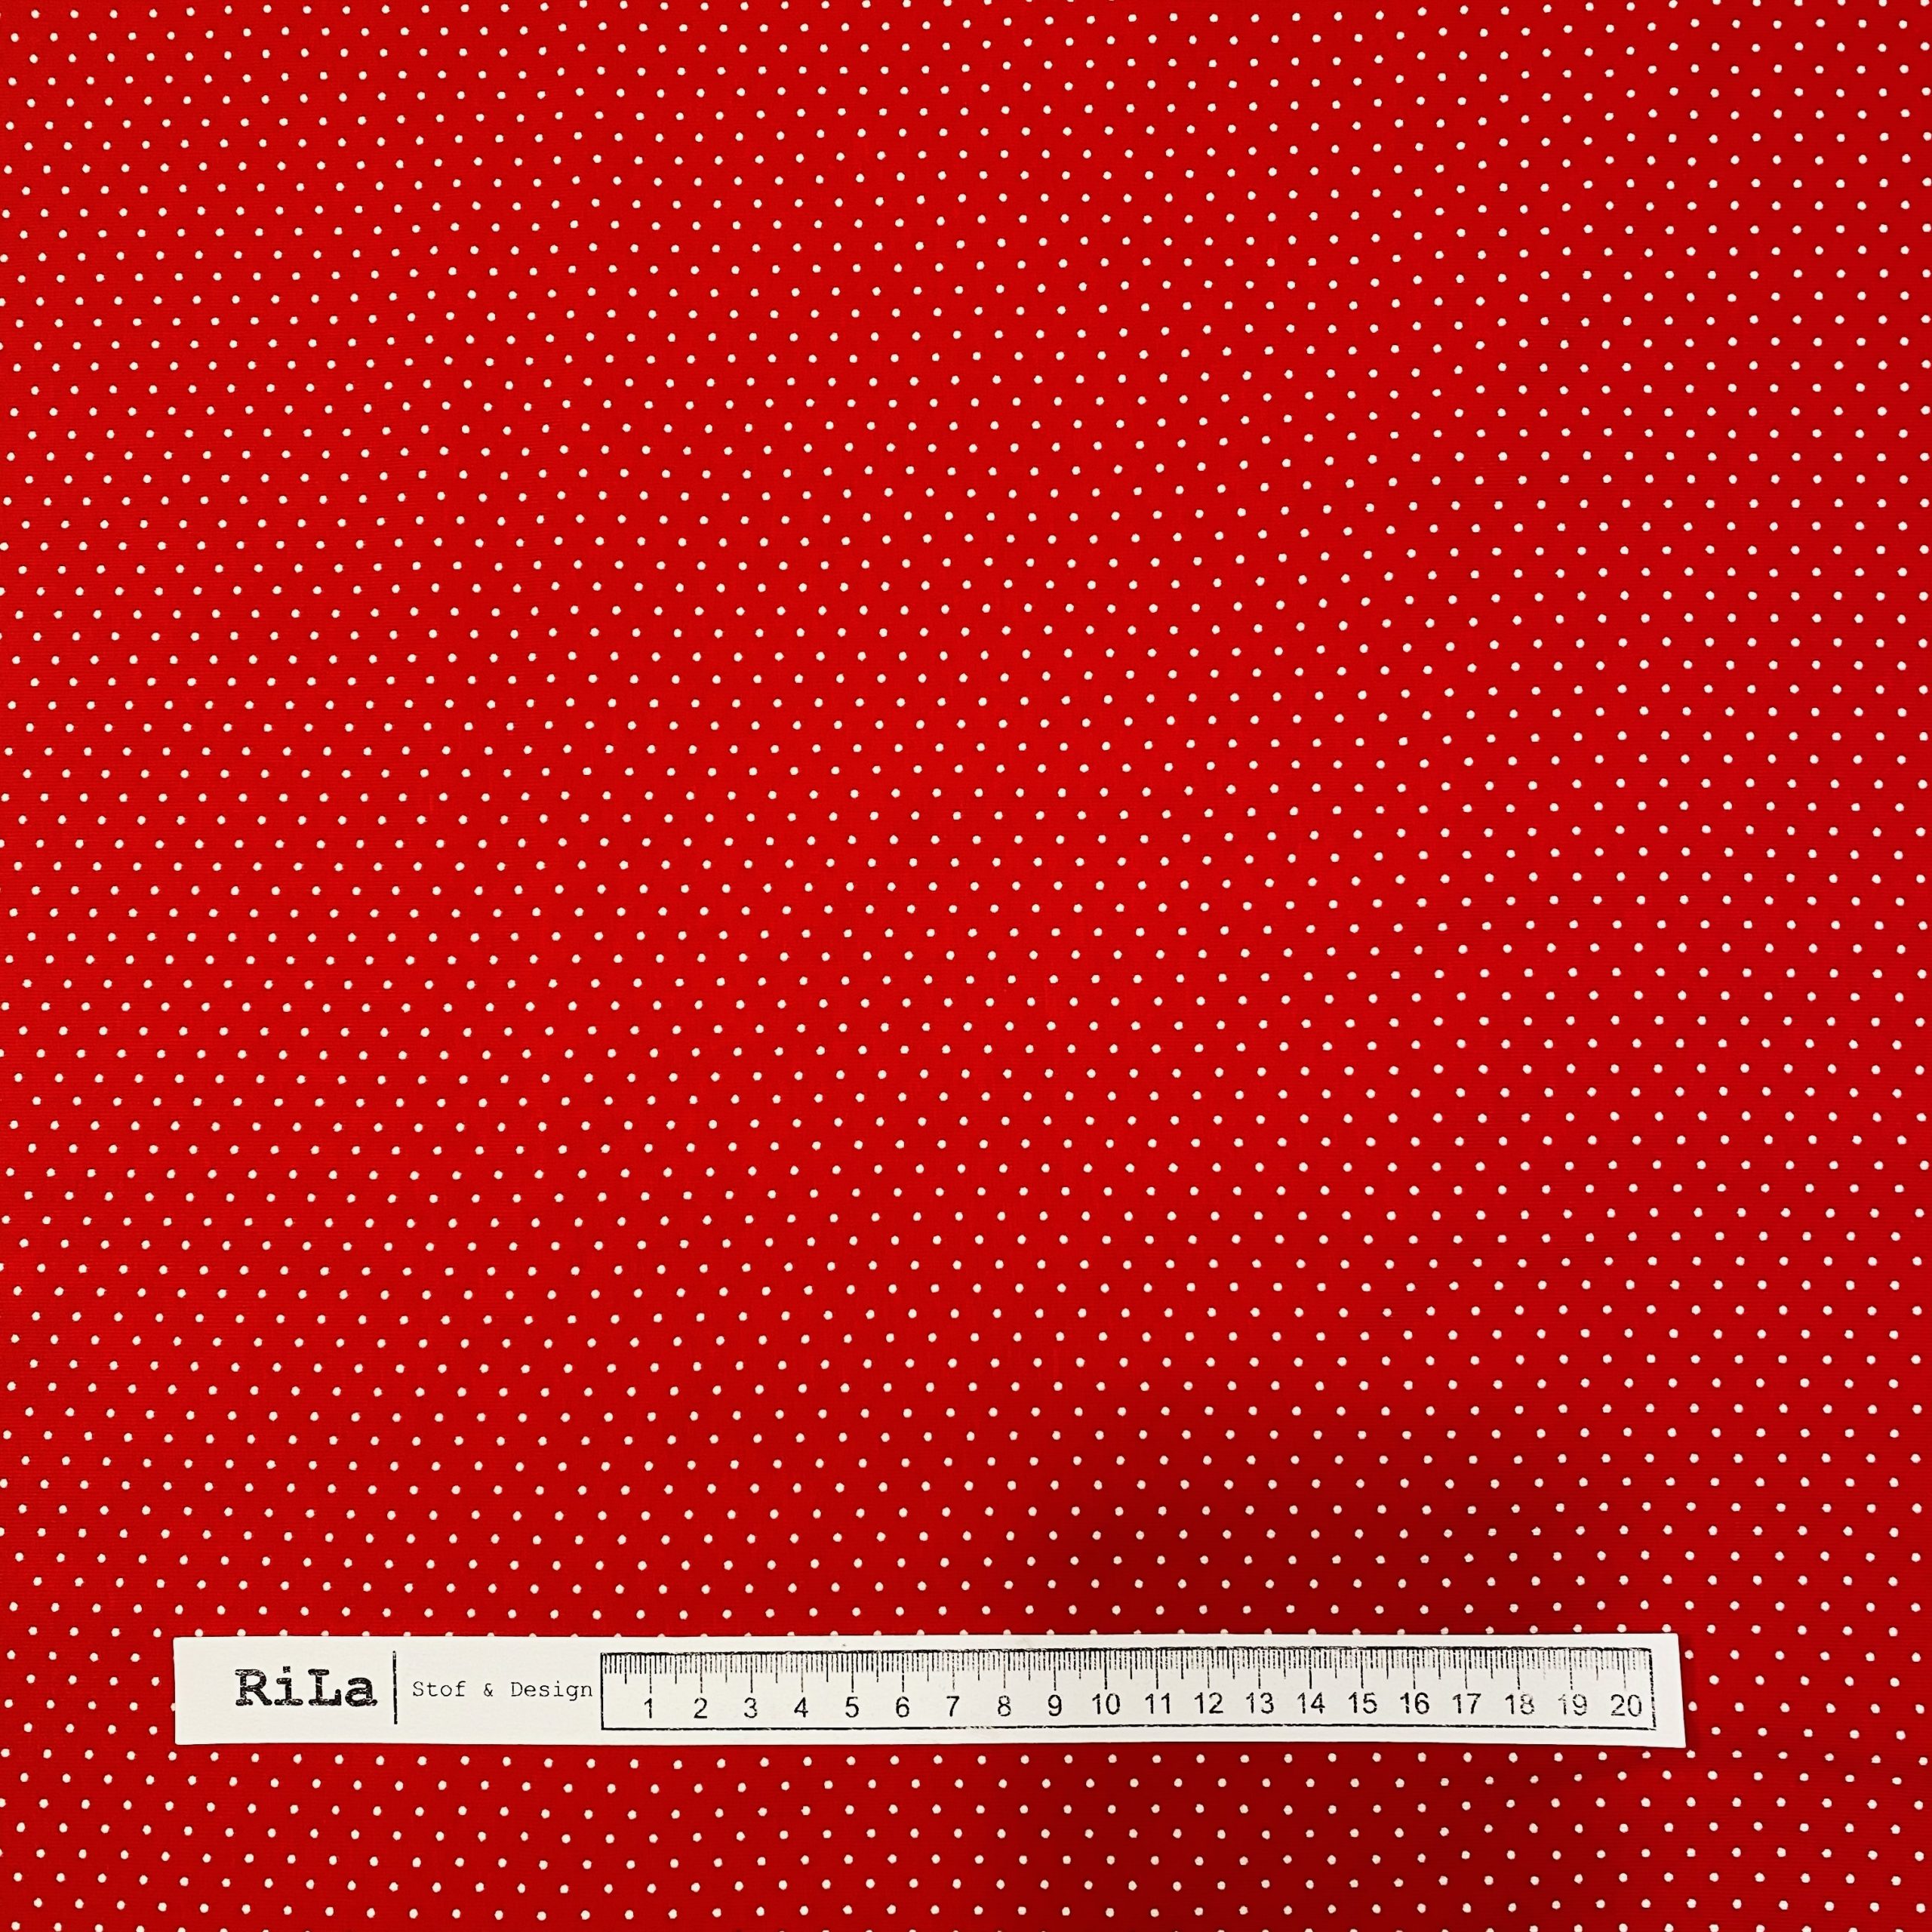 Rød bomuldsjersey hvide prikker - RiLa Stof & Design